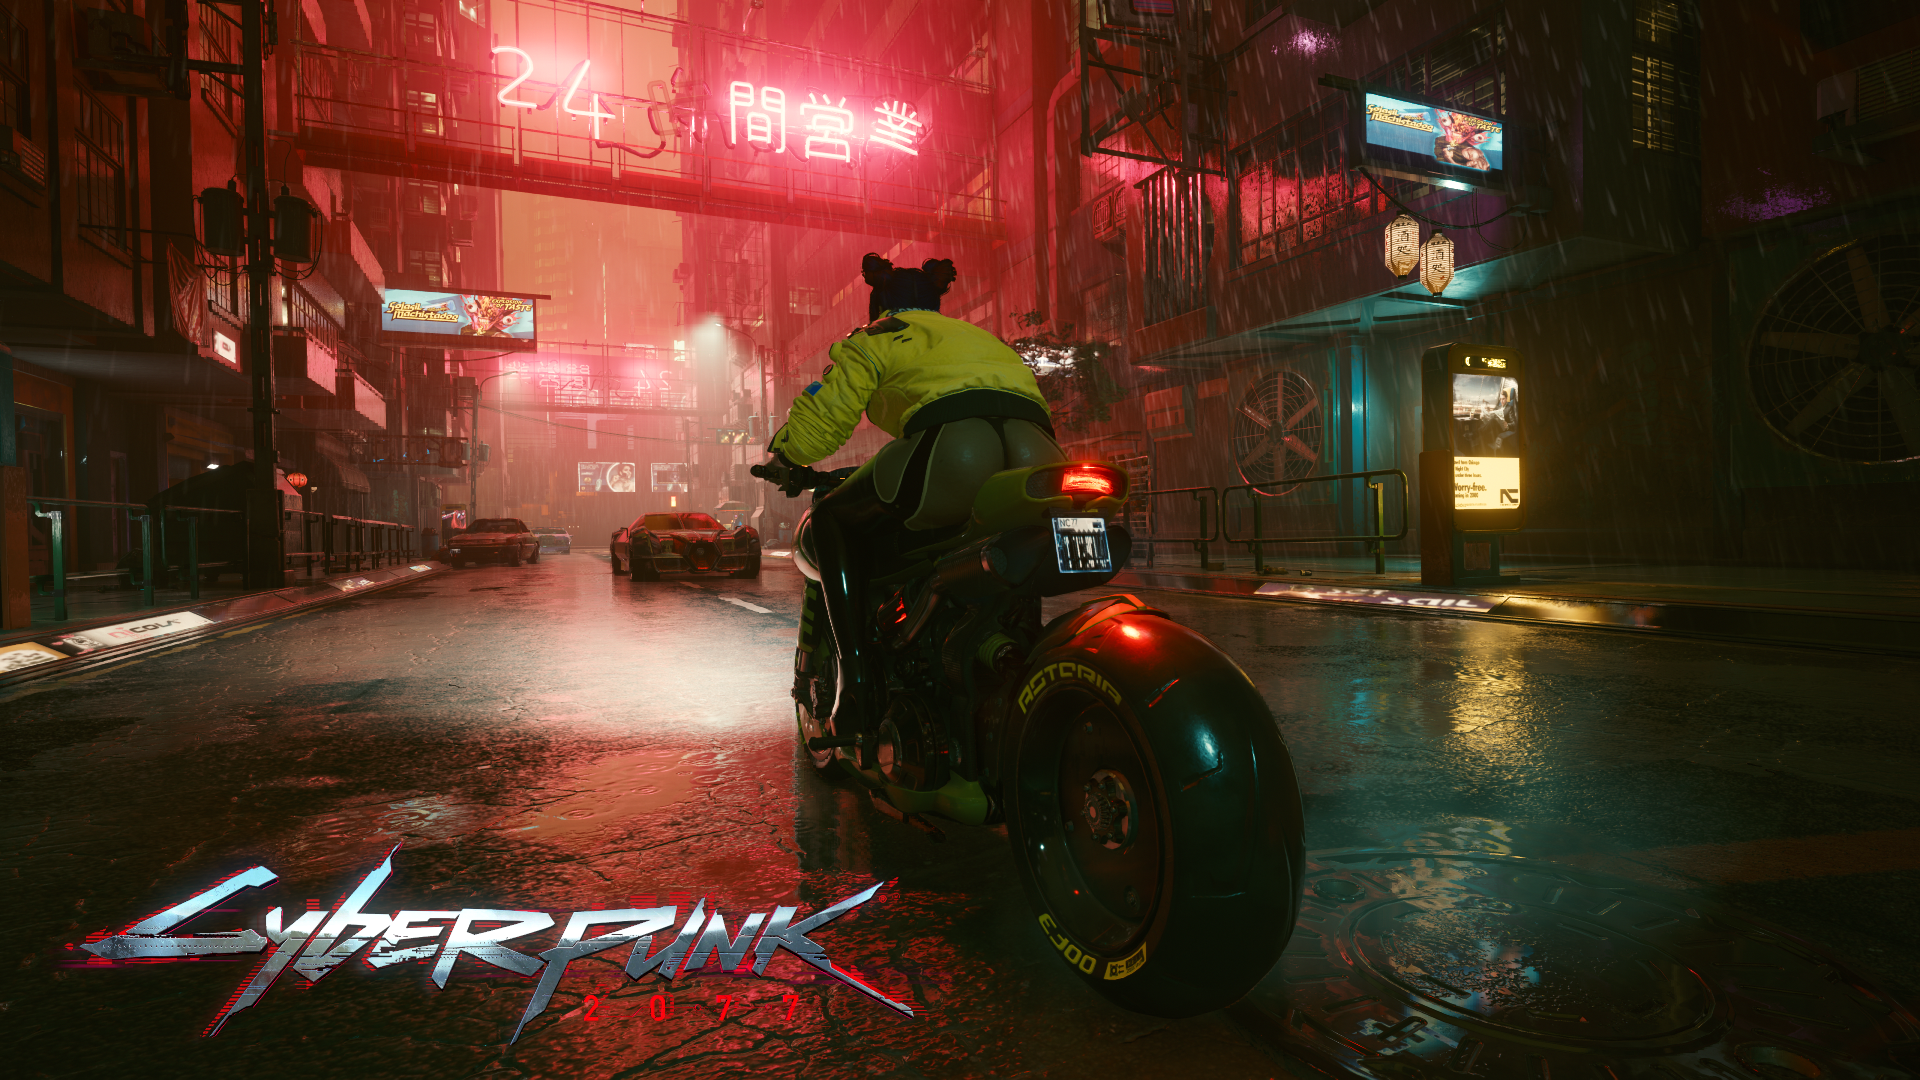 General 1920x1080 cyberpunk Cyberpunk 2077 CD Projekt RED ass motorcycle city rain video games